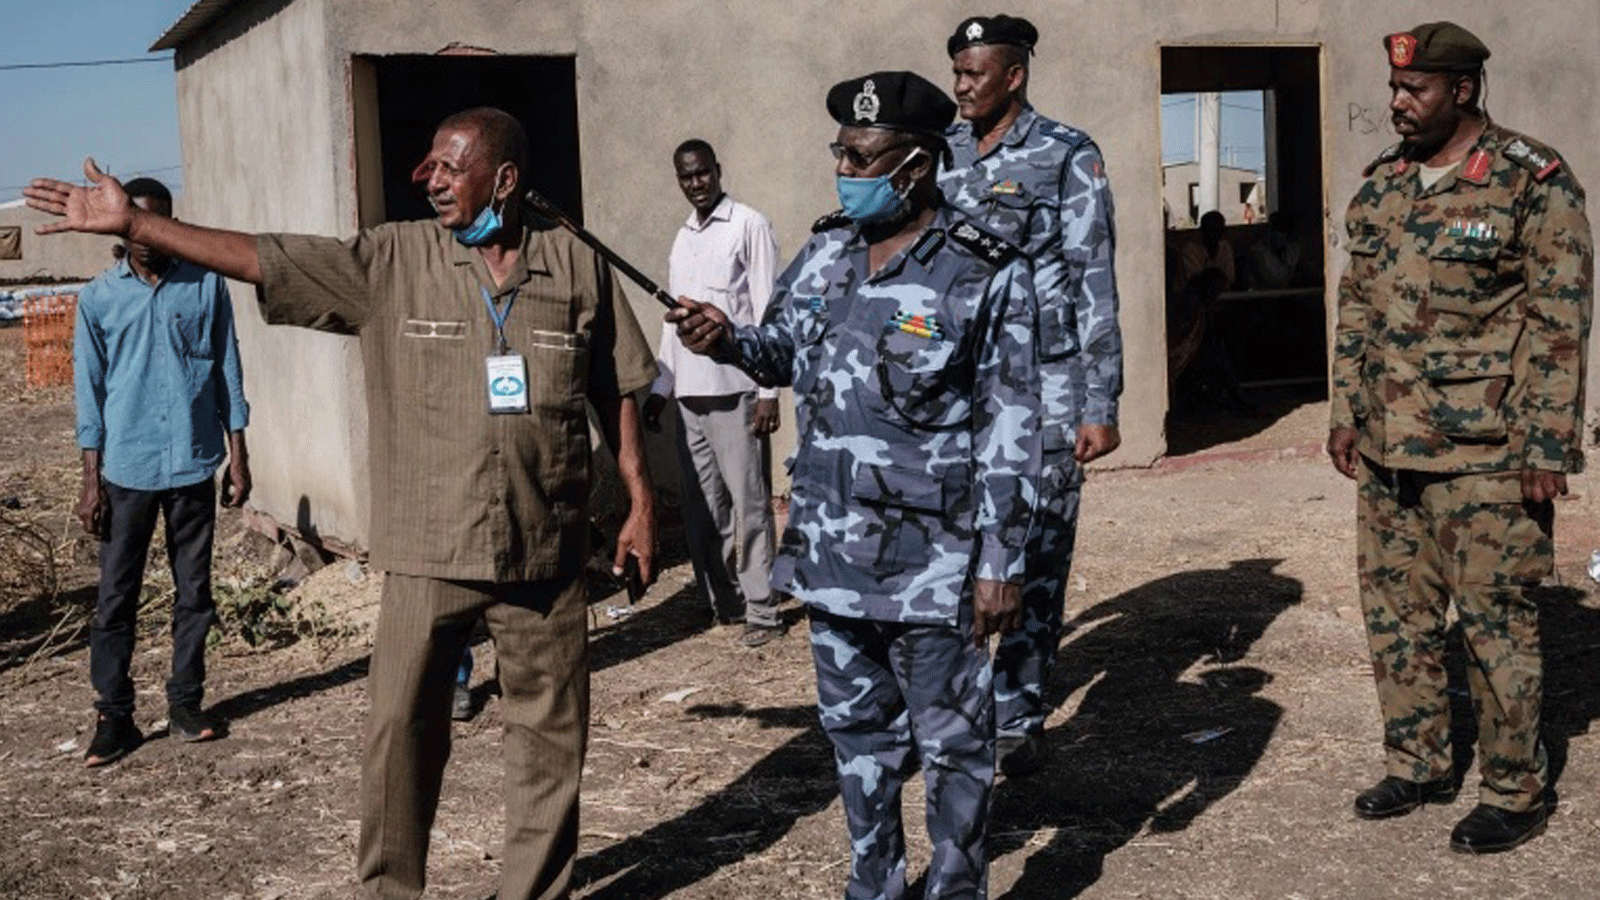  مسؤولو الشرطة والجيش المحليون يتفقدون مركز عبور Village Eight، الذي يستضيف اللاجئين الإثيوبيين الذين فروا من صراع تيغراي، بالقرب من الحدود الإثيوبية في القضارف، شرق السودان(صورة أرشيفية)